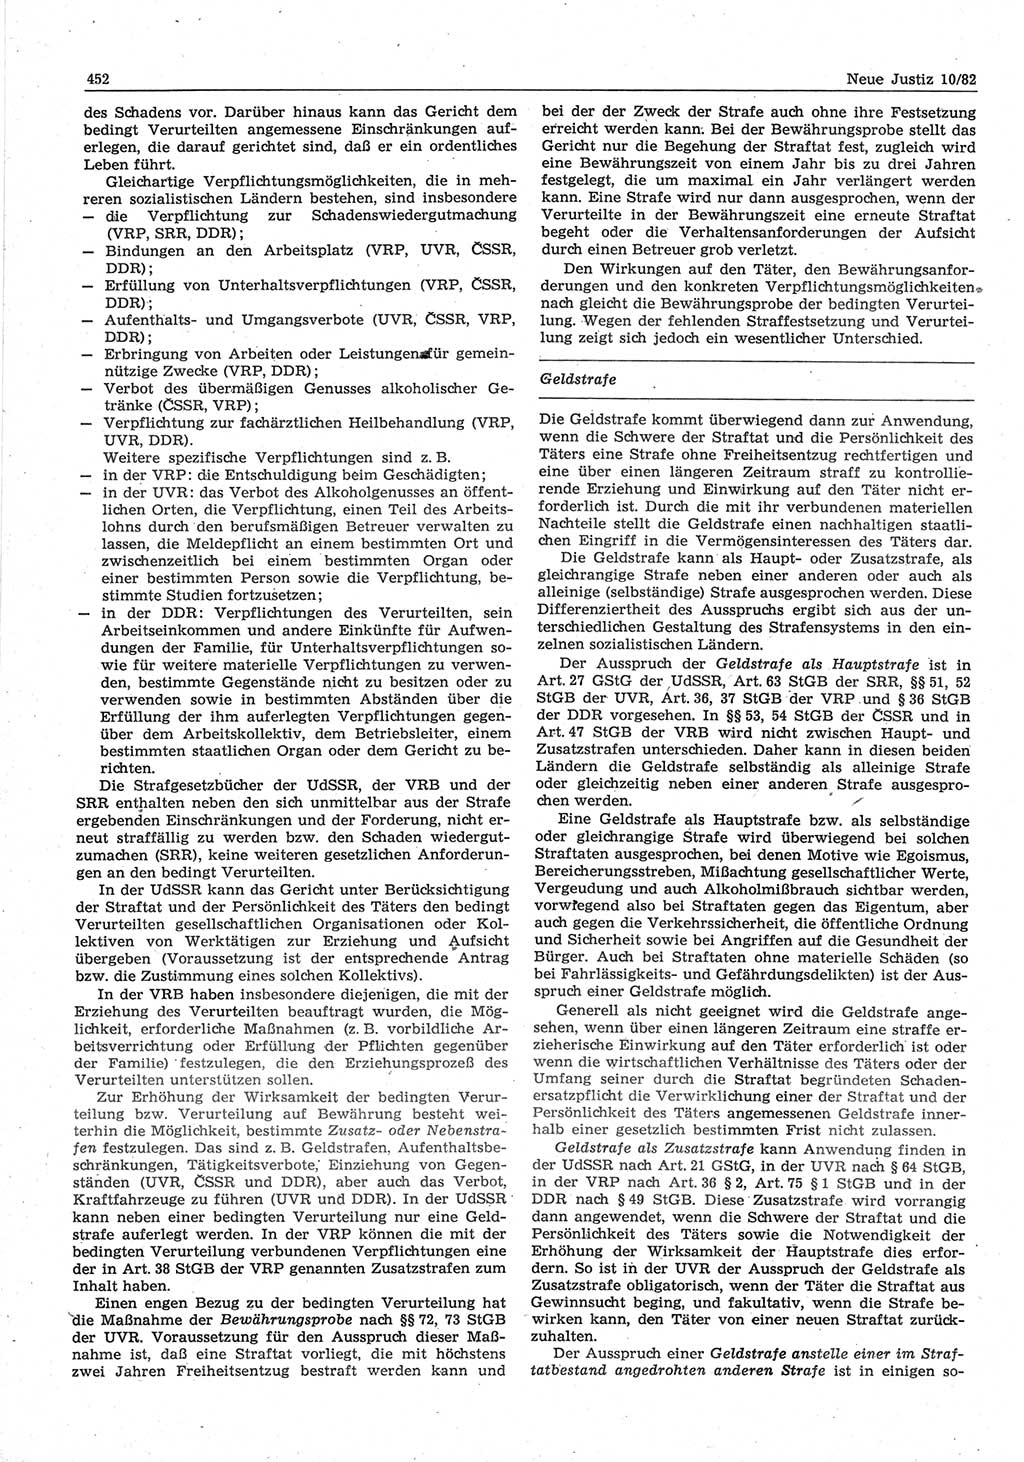 Neue Justiz (NJ), Zeitschrift für sozialistisches Recht und Gesetzlichkeit [Deutsche Demokratische Republik (DDR)], 36. Jahrgang 1982, Seite 452 (NJ DDR 1982, S. 452)